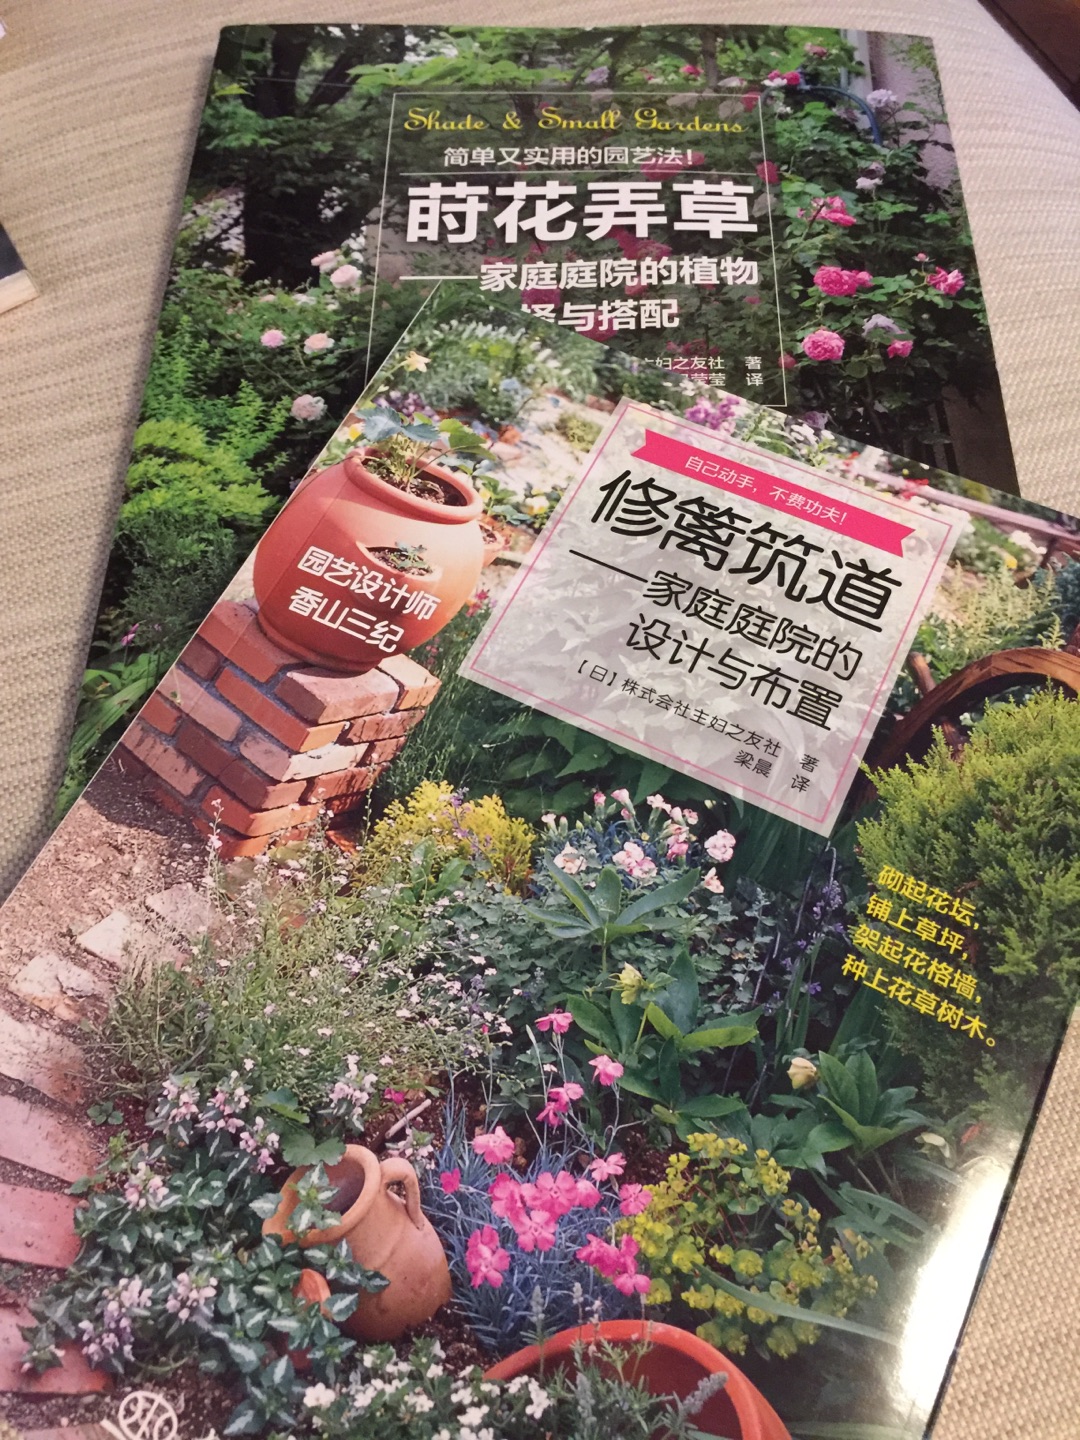 最近买了好多花花草草的书，同时买的莳花弄草和修蓠筑道，非常有用的两本书，图片精美，实例很有帮助！